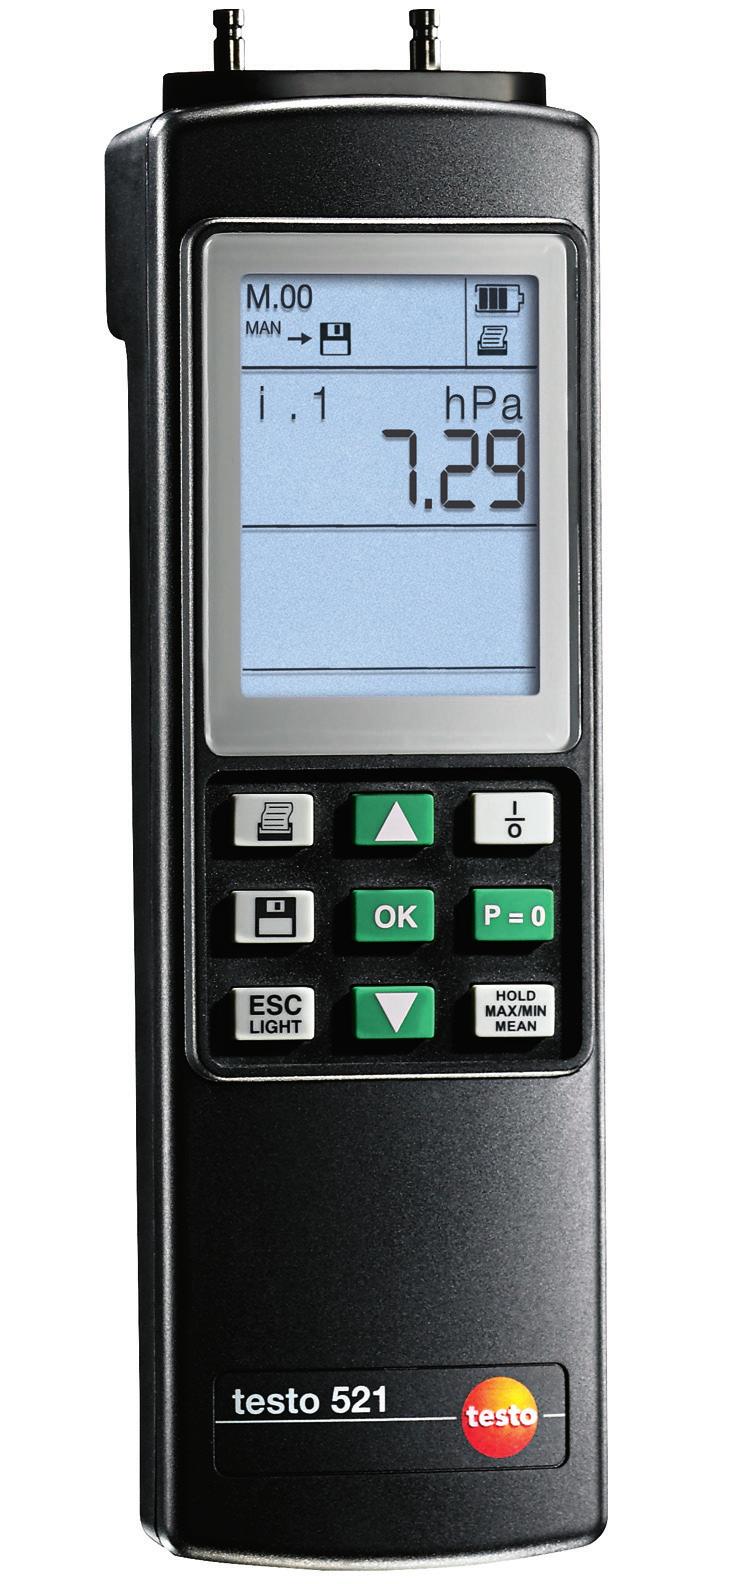 Ürün broşürü testo 521 Fark basınç ölçüm cihazı testo 521 Hassas Pitot tüp ölçümü Cihaza entegre edilmiş, sıcaklık düzeltmeli fark basınç sensörü Basınç ve sıcaklık ölçümü için başka probların